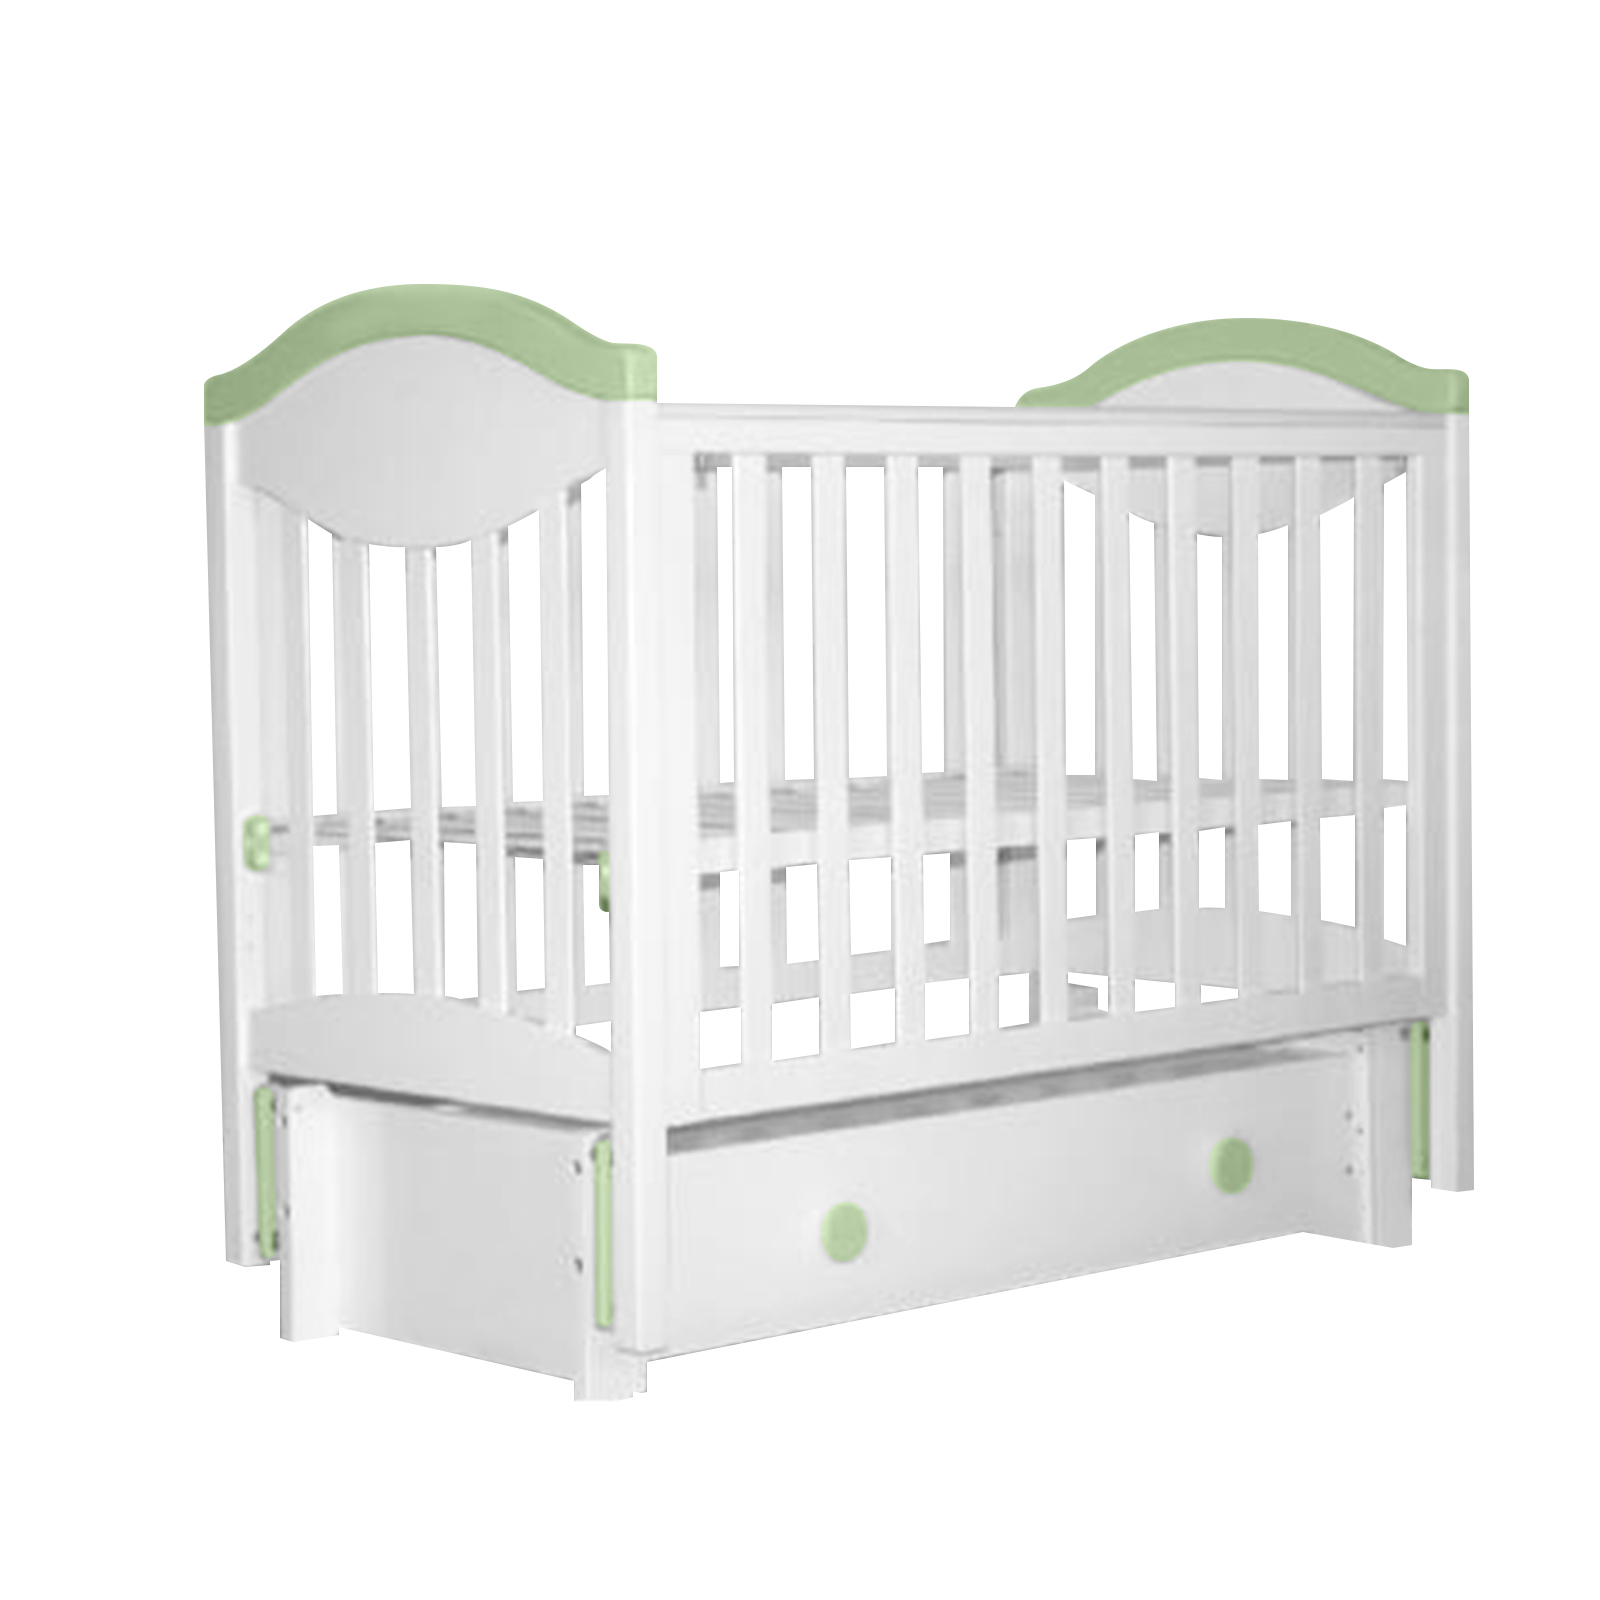 фото Аб 23.3 детская кровать маятниковая продольная белый-светлозеленый лель